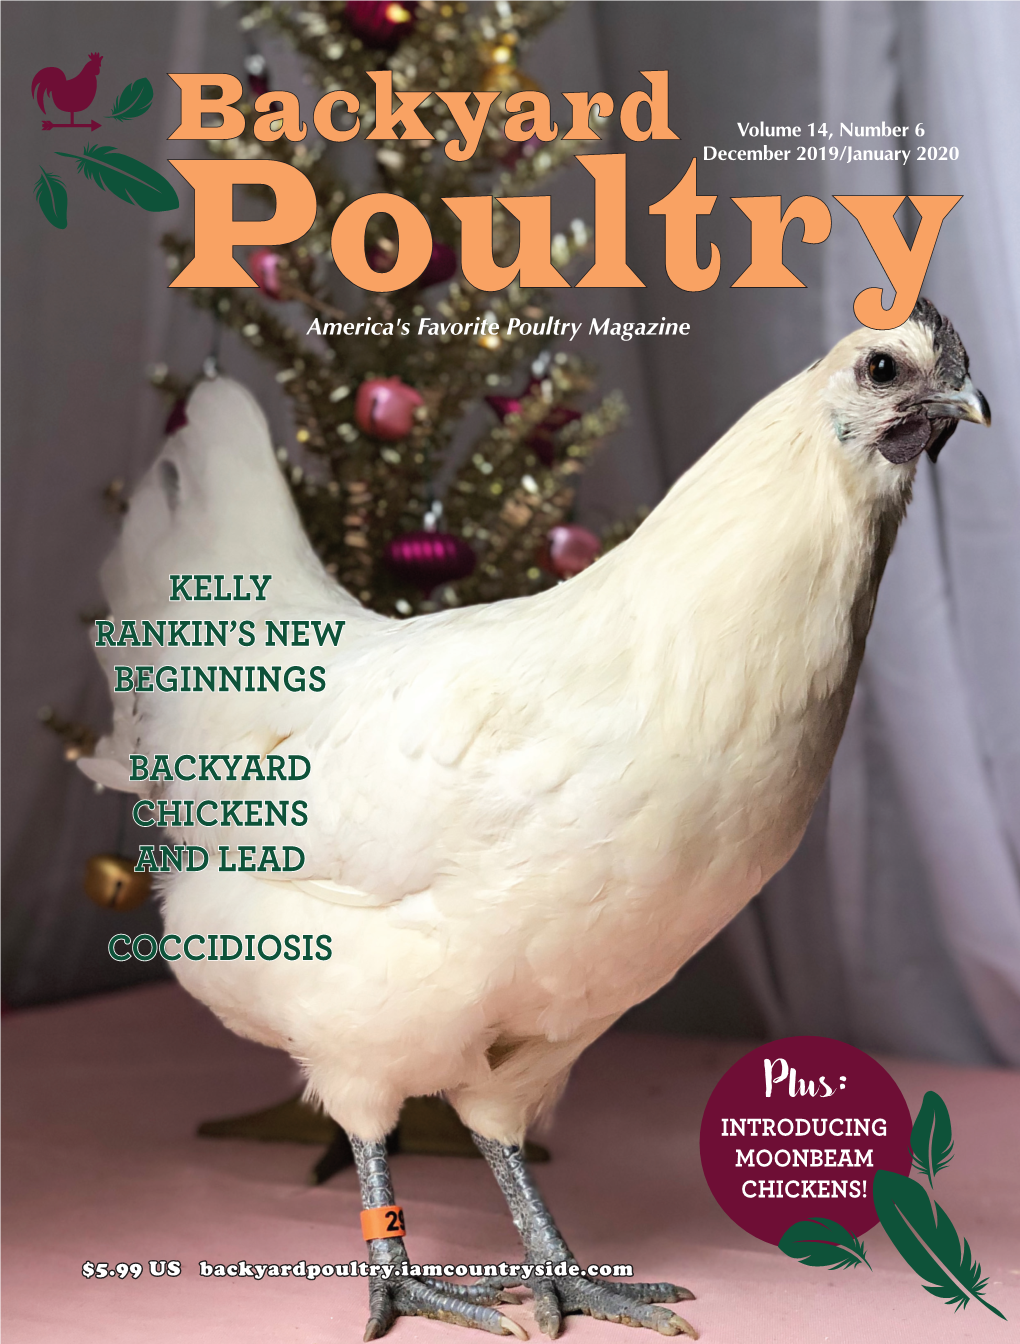 Backyard December 2019/January 2020 Poultry America's Favorite Poultry Magazine